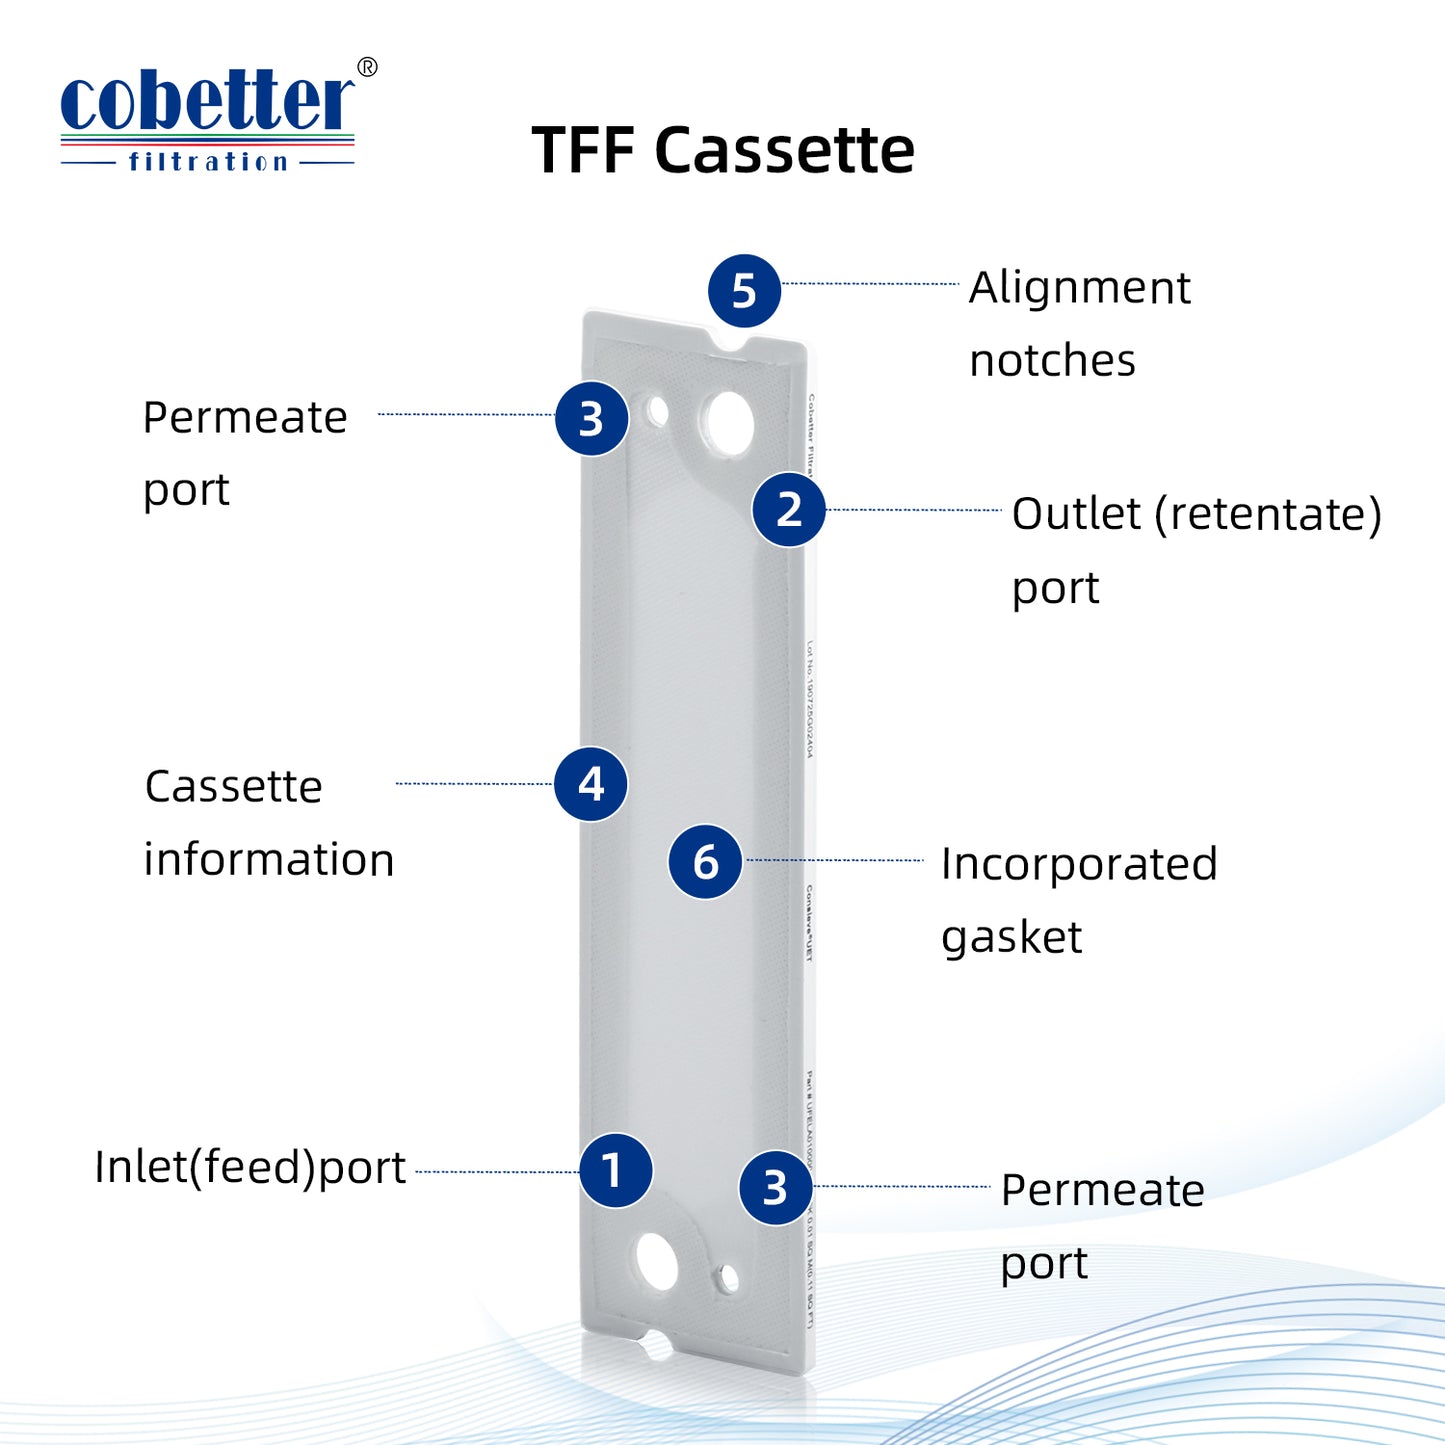 Cobetter tff cassette structure